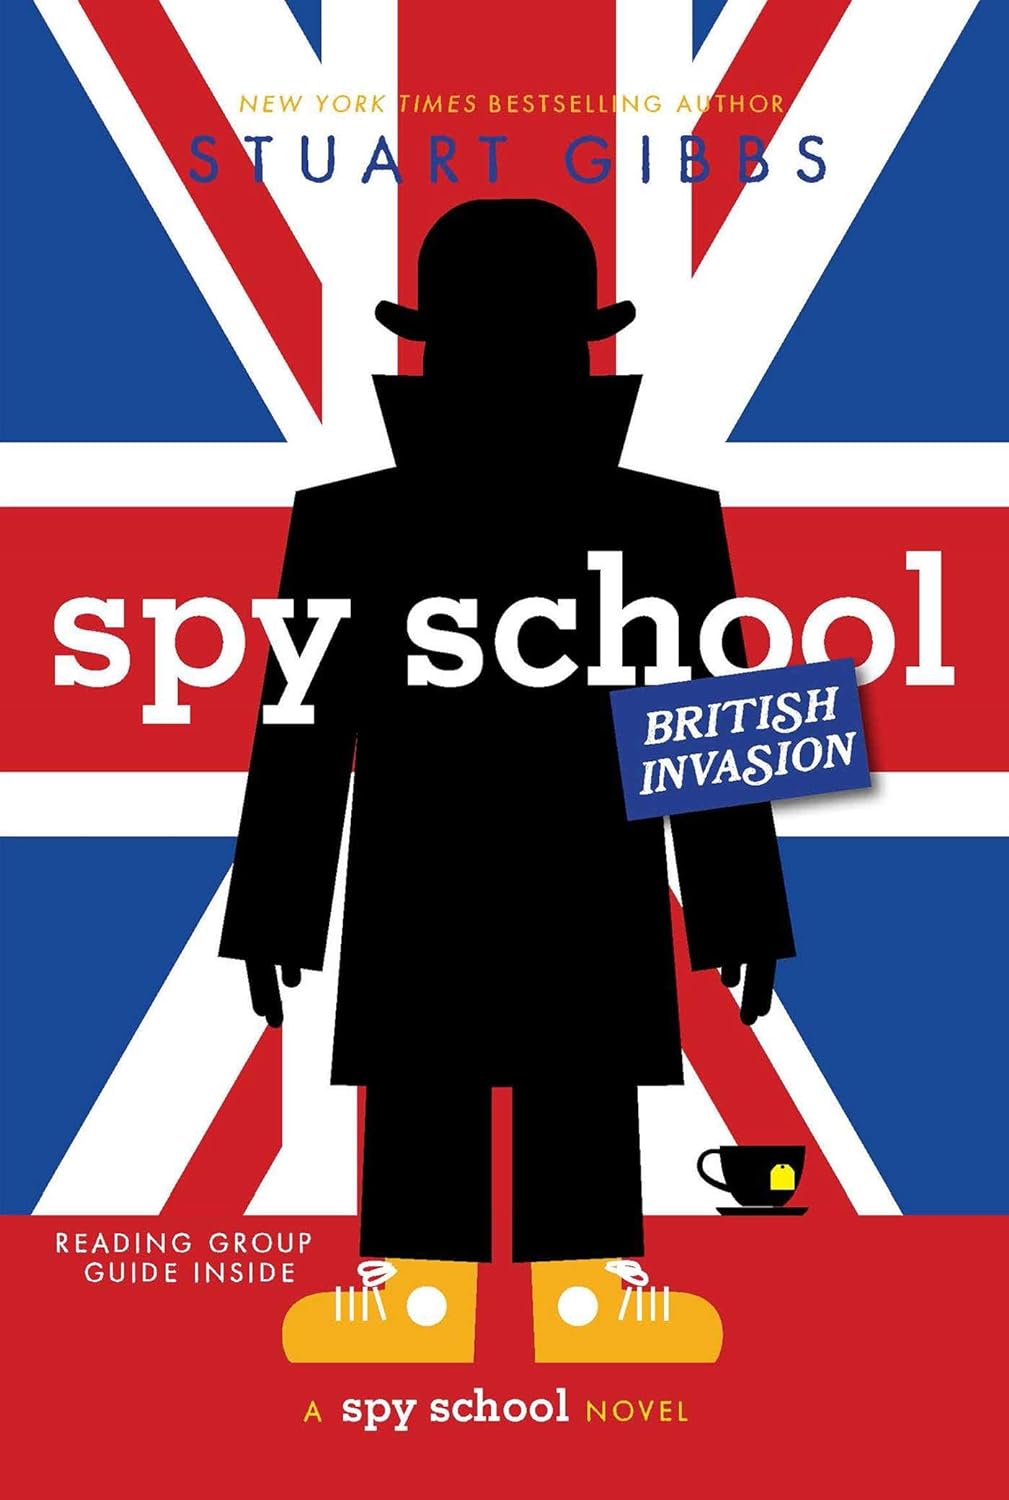 Spy School British Invasion - by Stuart Gibbs